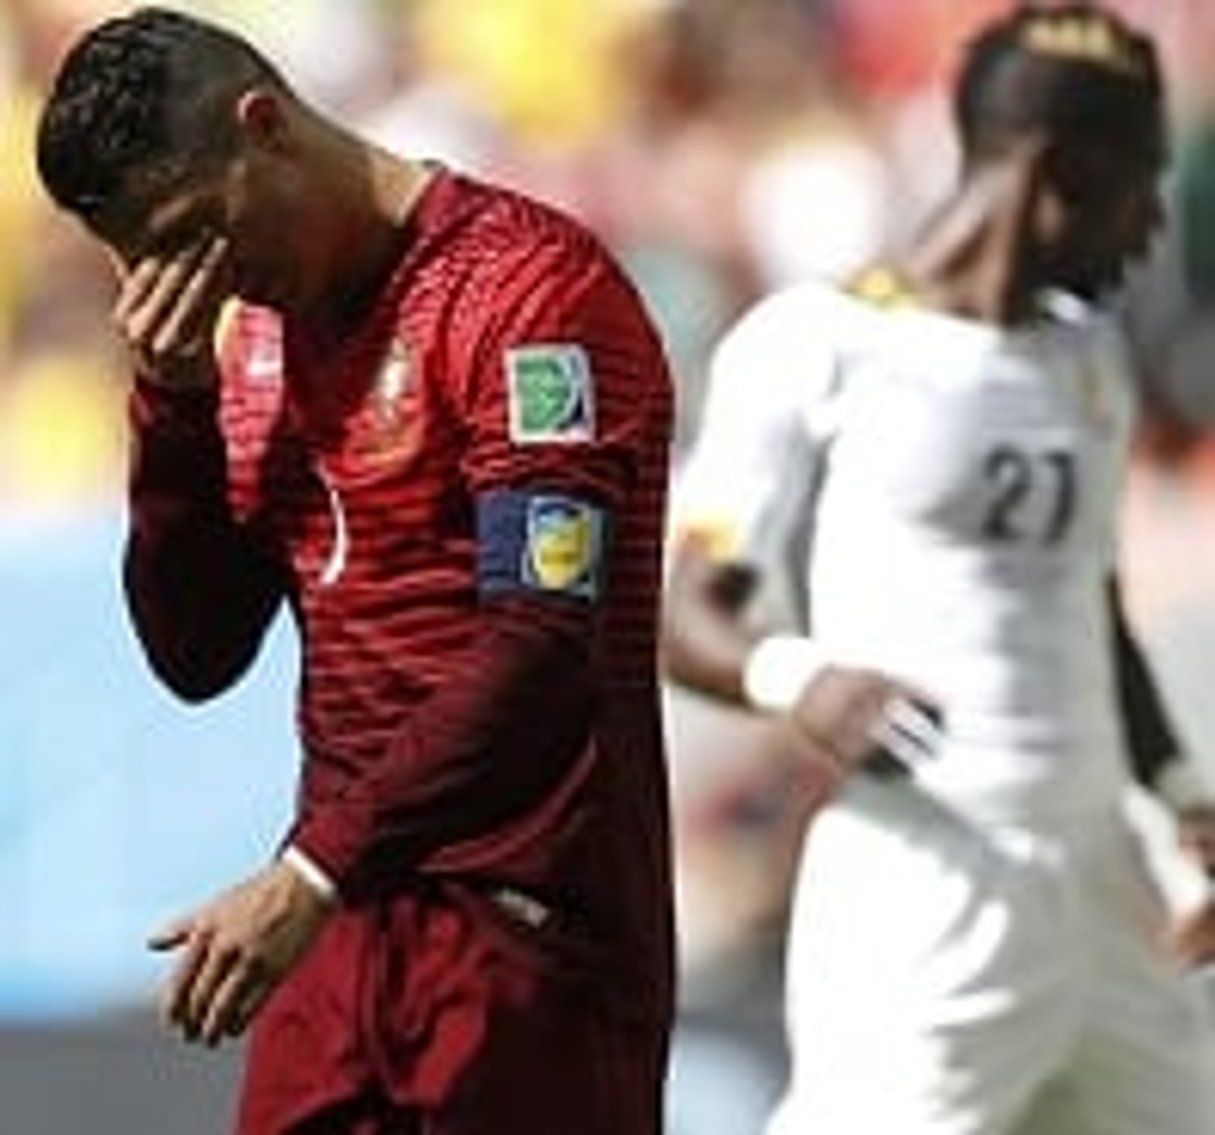 En marquant, Ronaldo a fait subir le même sort au Ghana que sa sélection : l’élimination. © AFP